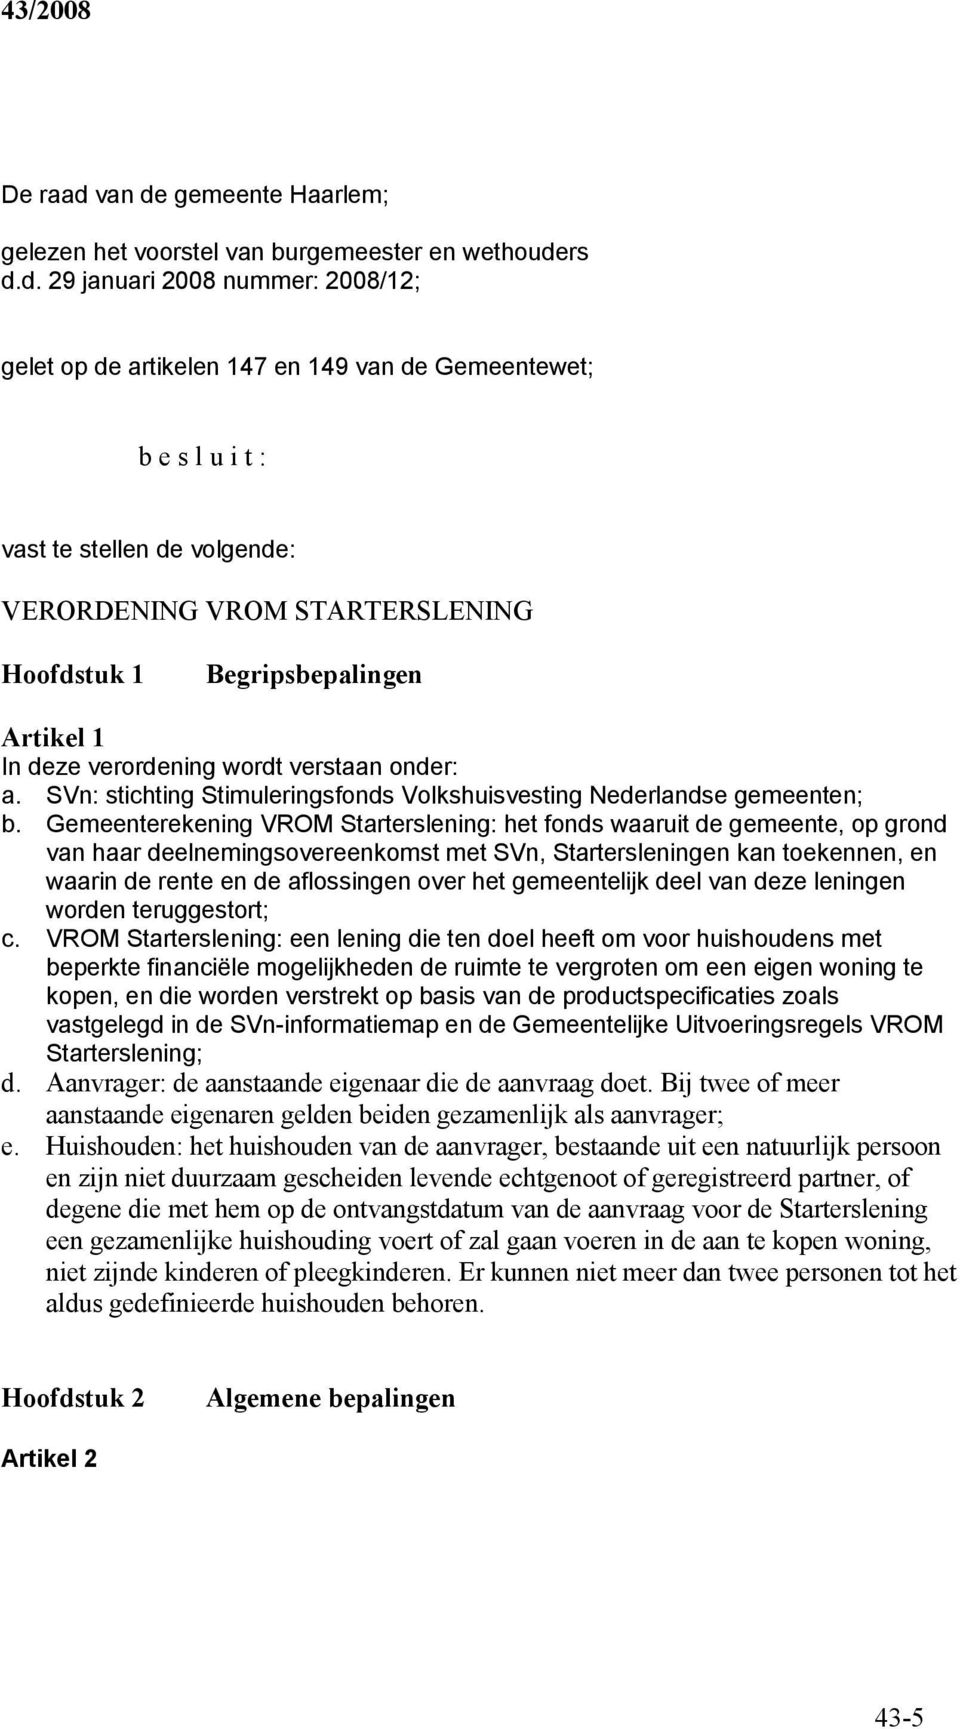 gemeente Haarlem; gelezen het voorstel van burgemeester en wethoude